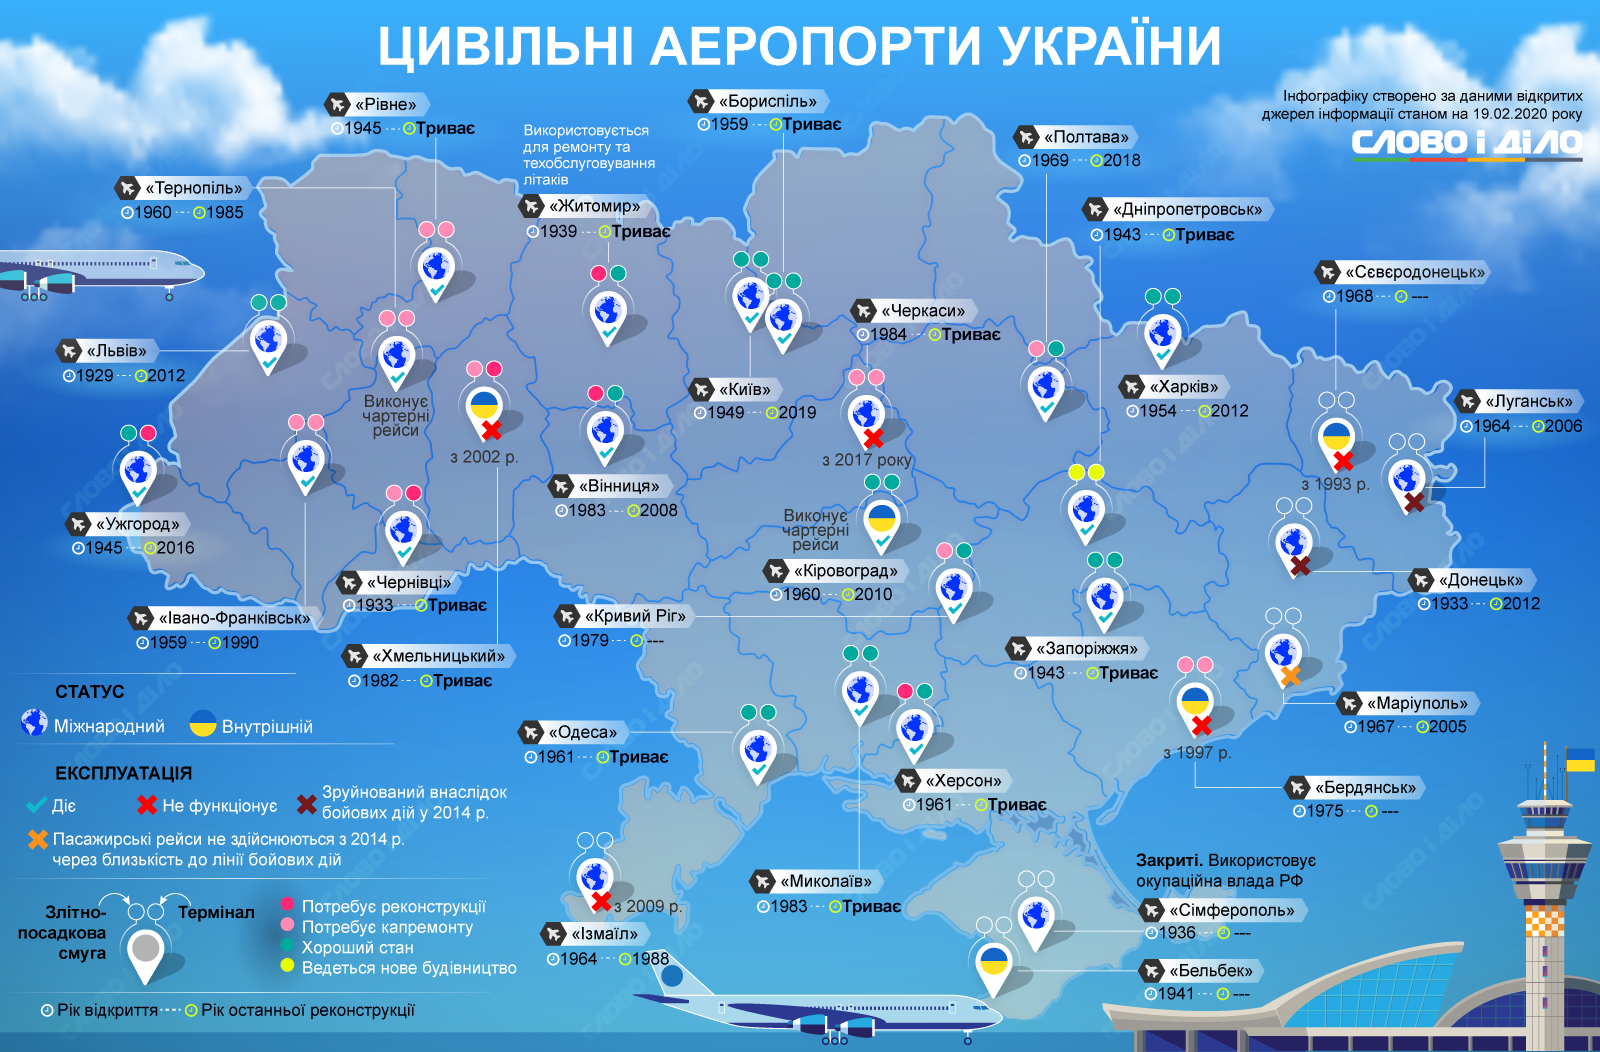 Международные аэропорты украины